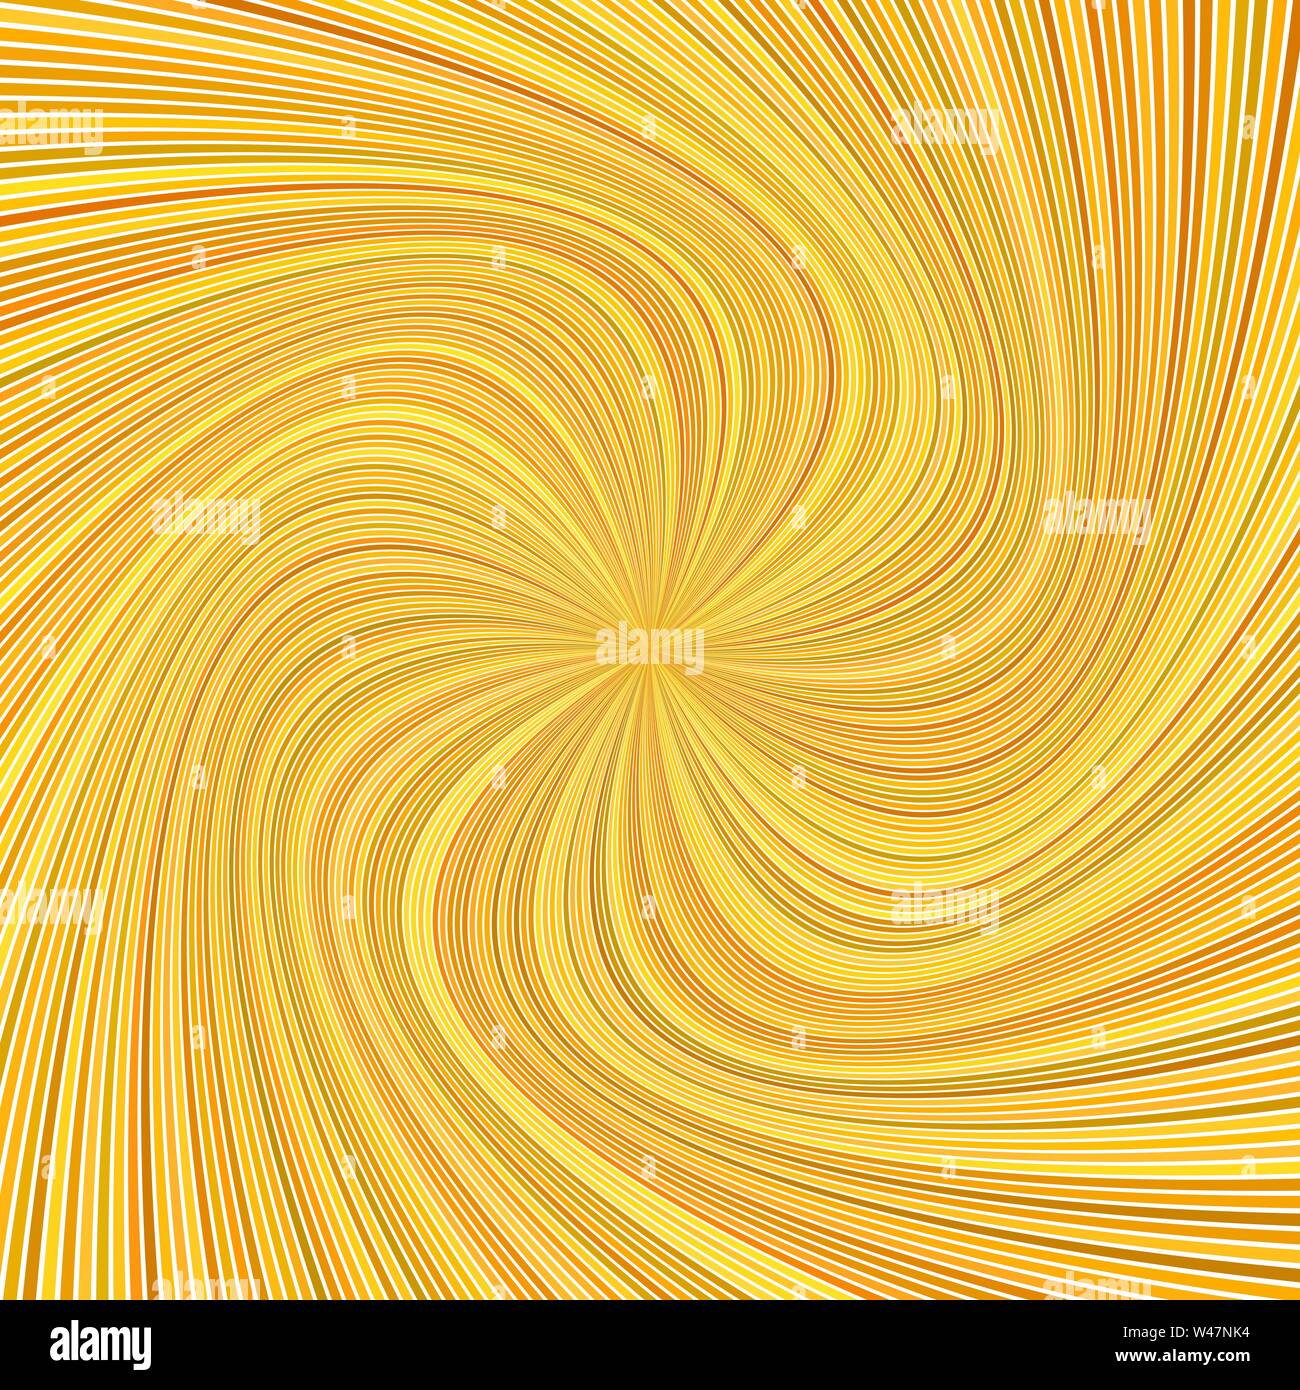 Abstract Orange burst en spirale psychédélique fond de rayure - vector illustration Illustration de Vecteur